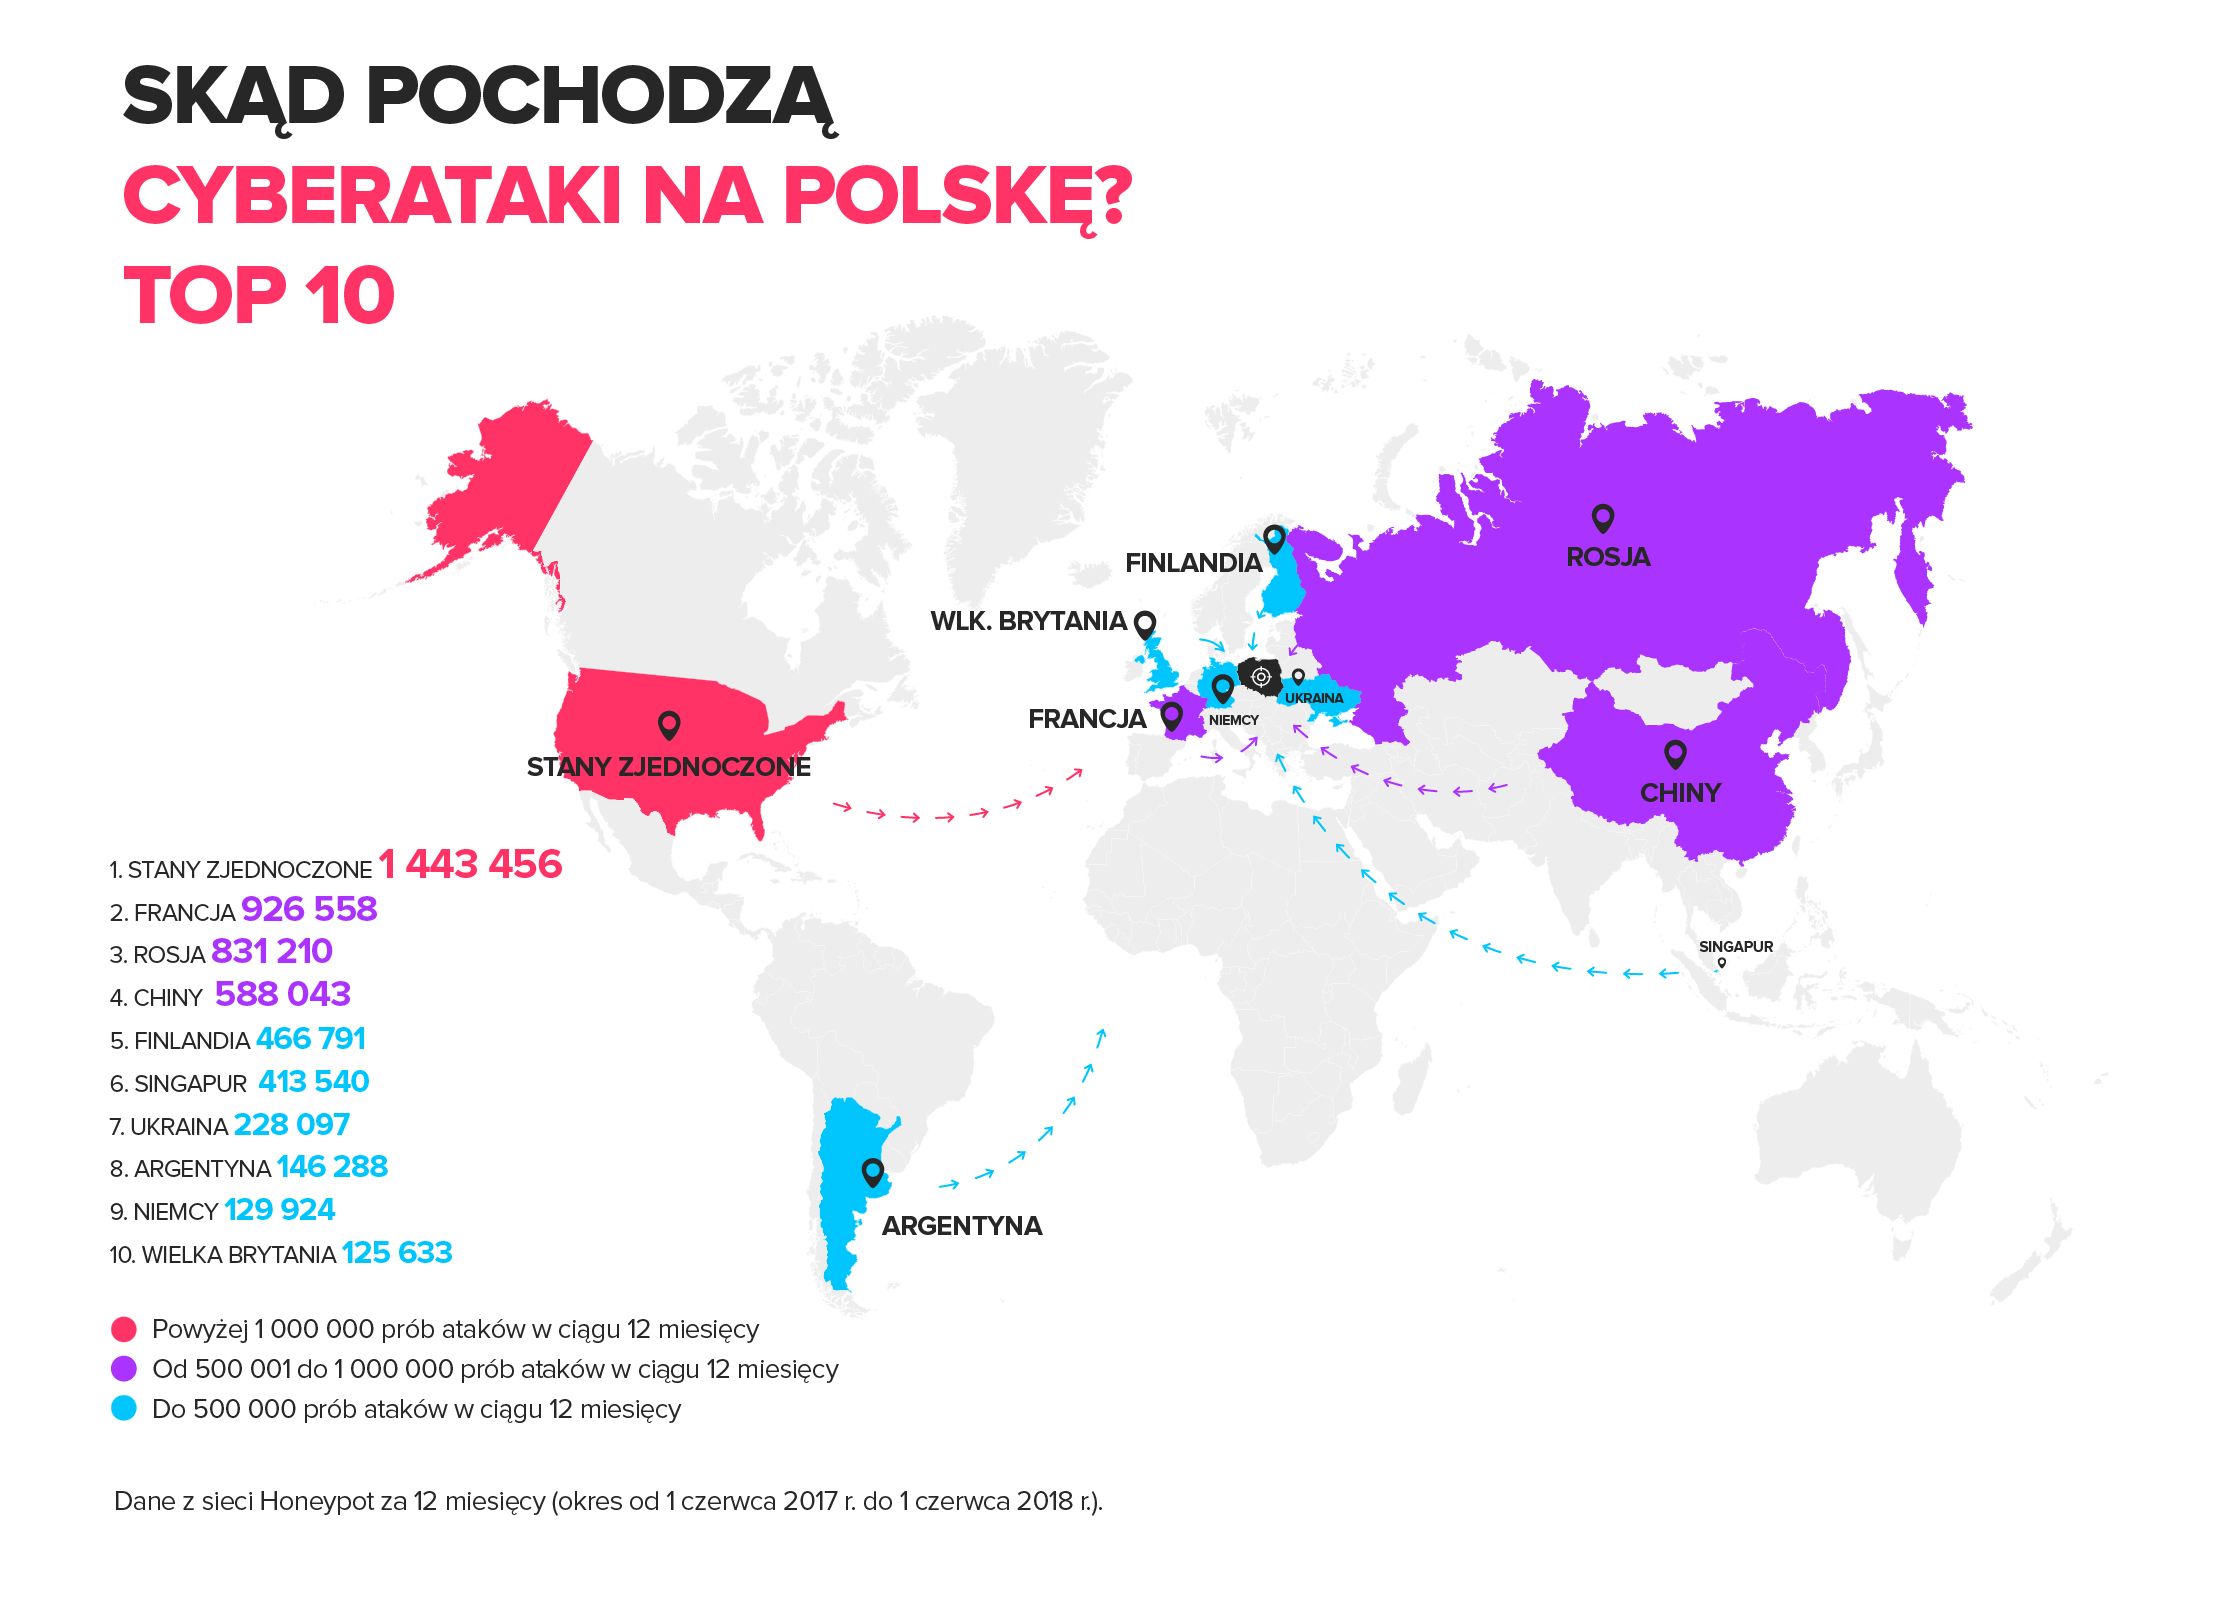 6 milionów cyberataków na Polskę w ciągu roku